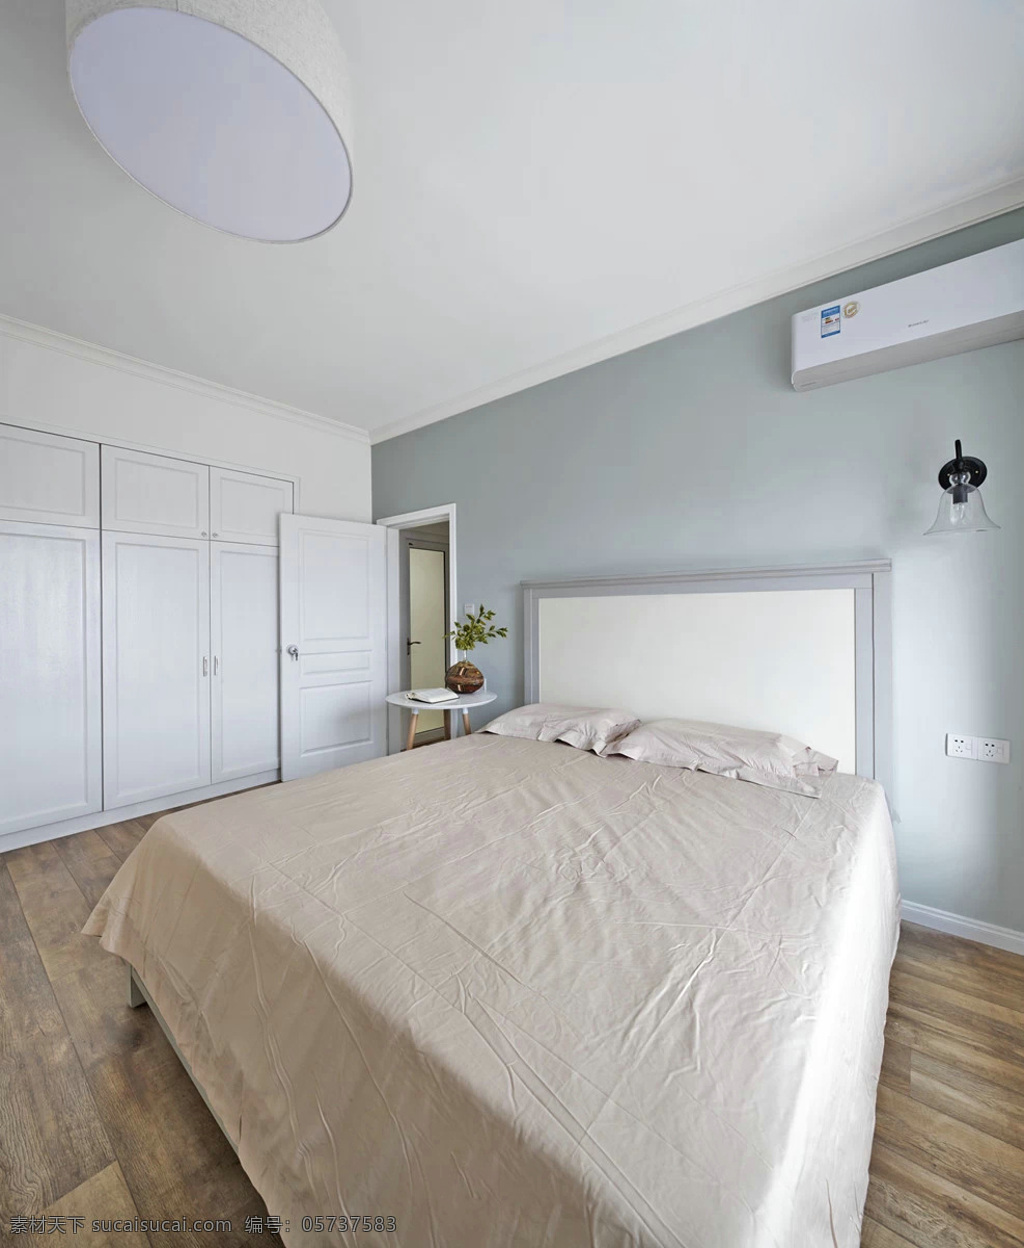 简约 时尚 卧室 床铺 装修 效果图 吸顶灯 灰色墙壁 白色衣柜 入户门 木地板